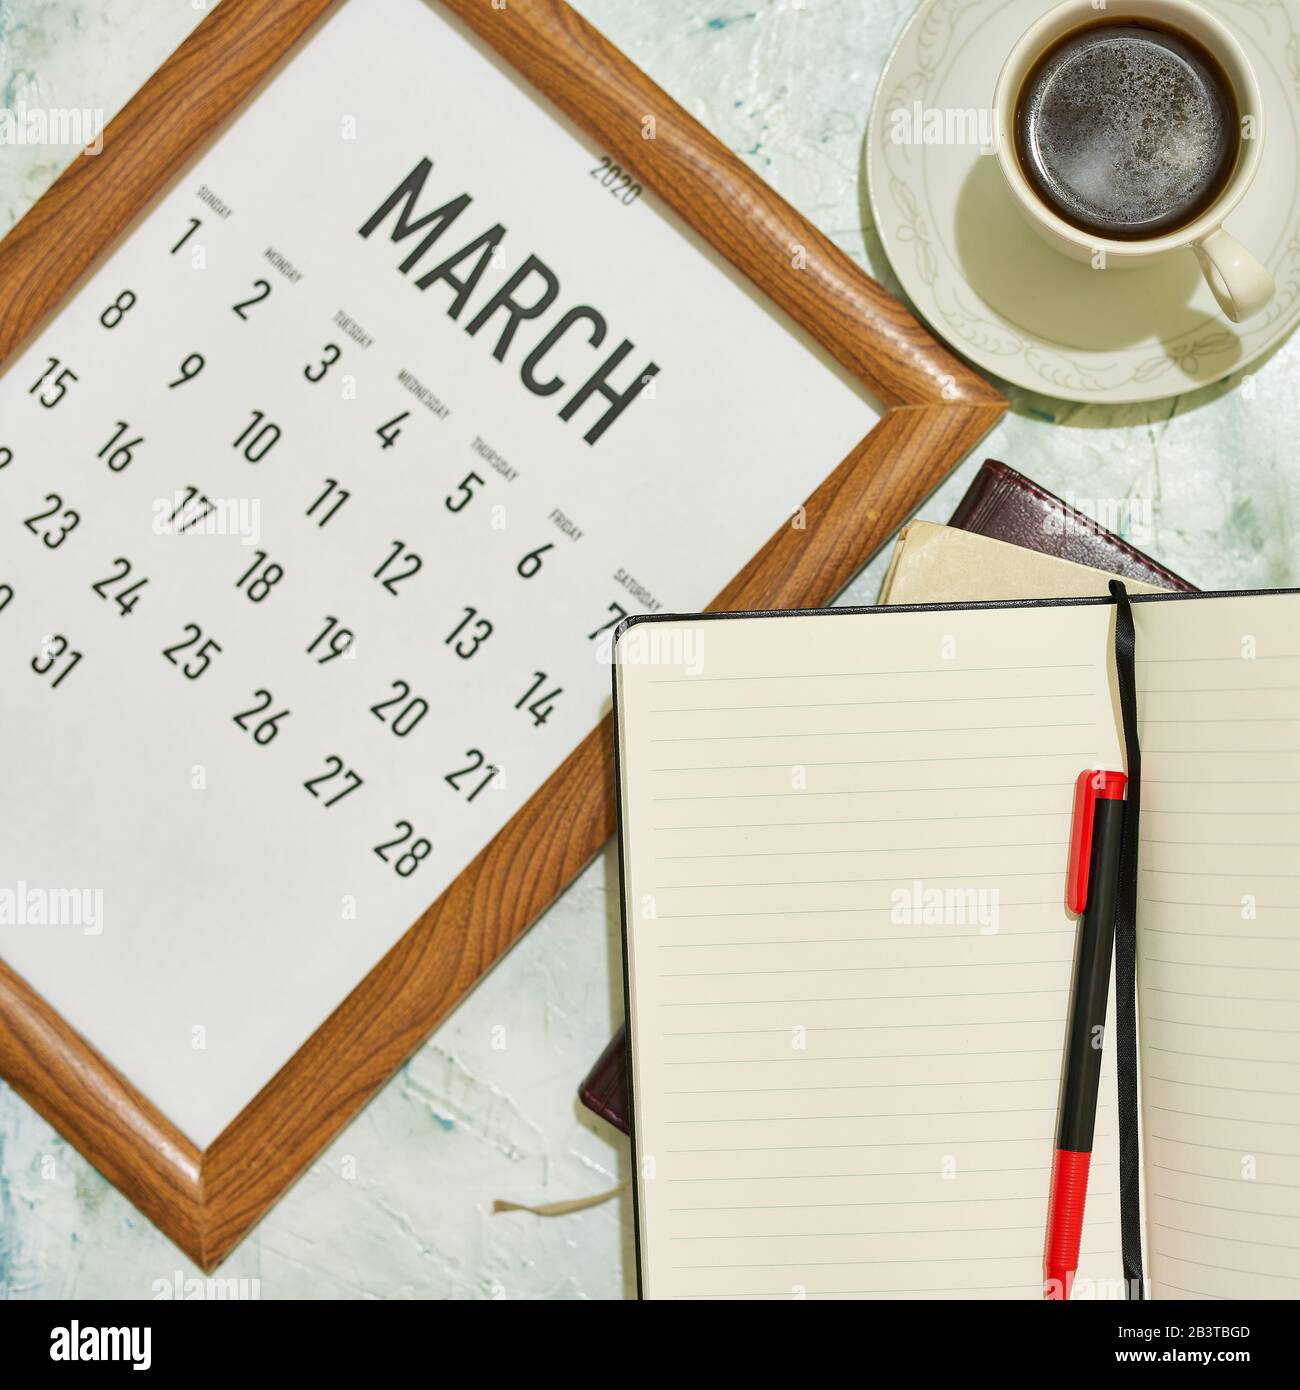 Ver desde arriba hasta el calendario mensual de marzo Foto de stock